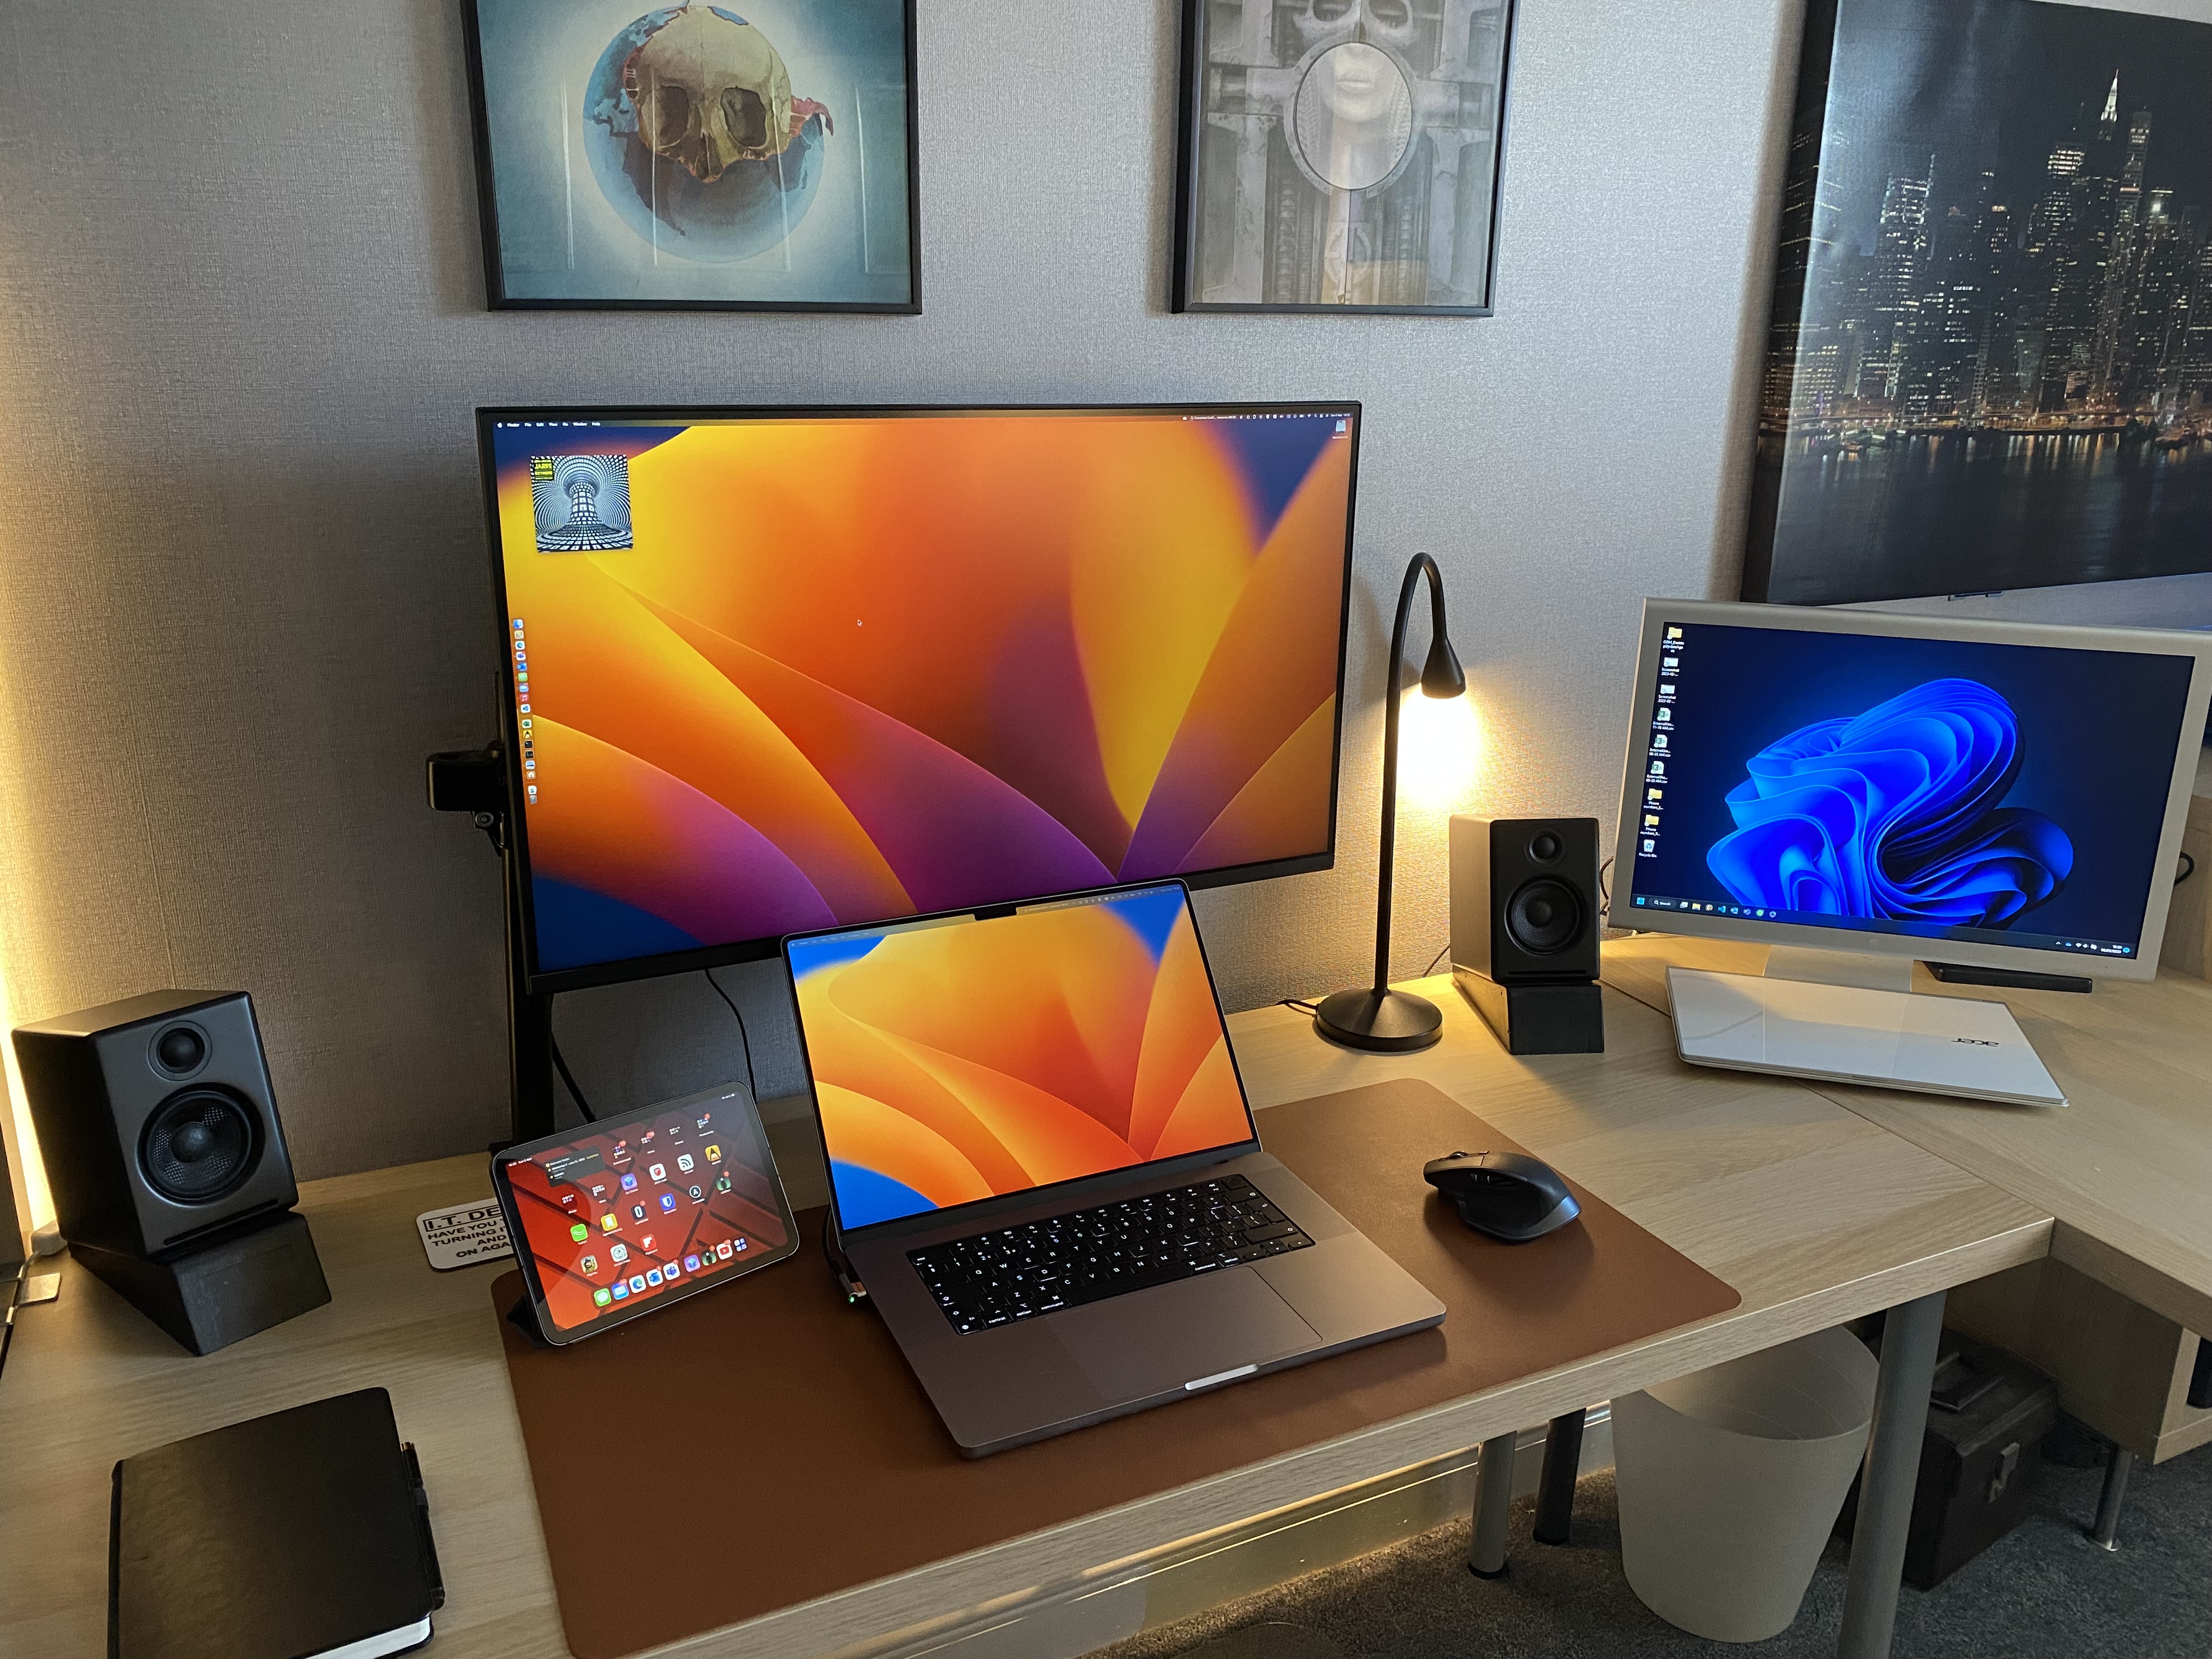 My new desk setup